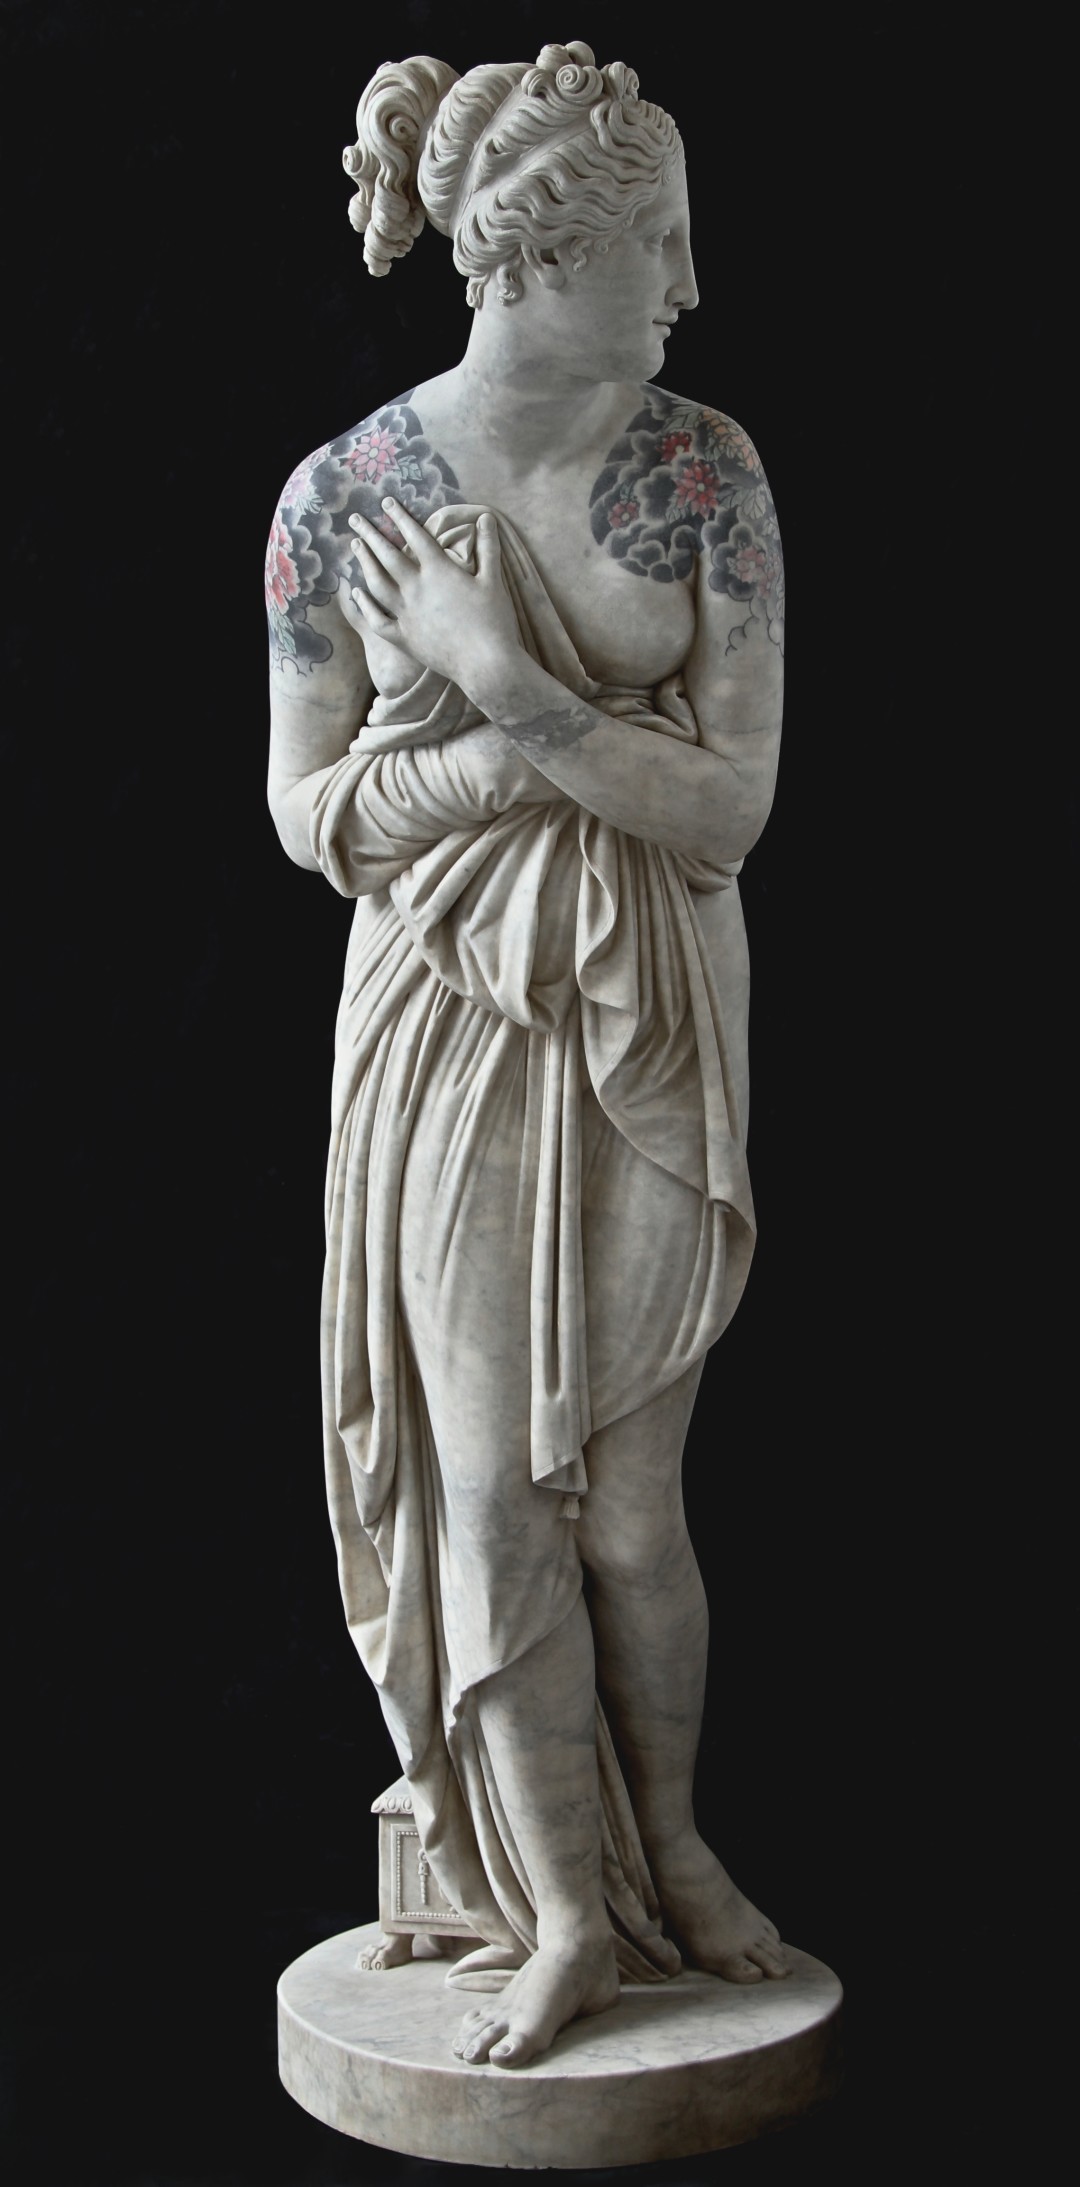 venere italica venus fabio viale statue marble marmo scultura art modern